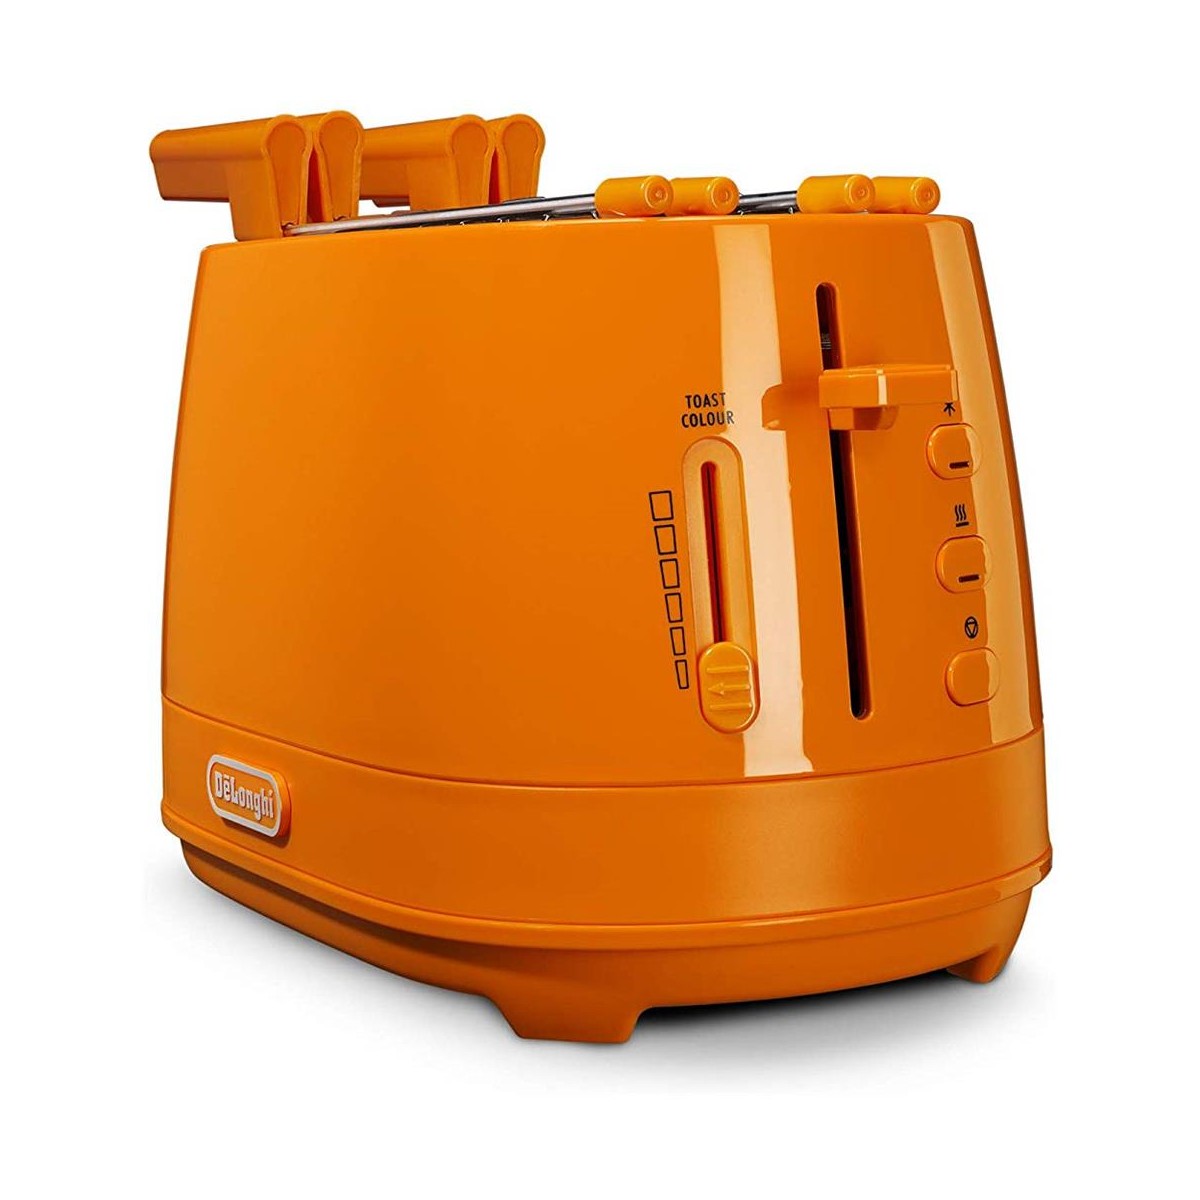 https://www.mondoelettrodomestici.com/1596-thickbox_default/tostapane-de-longhi-modello-ctlap22030-colore-prodotto-arancione.jpg